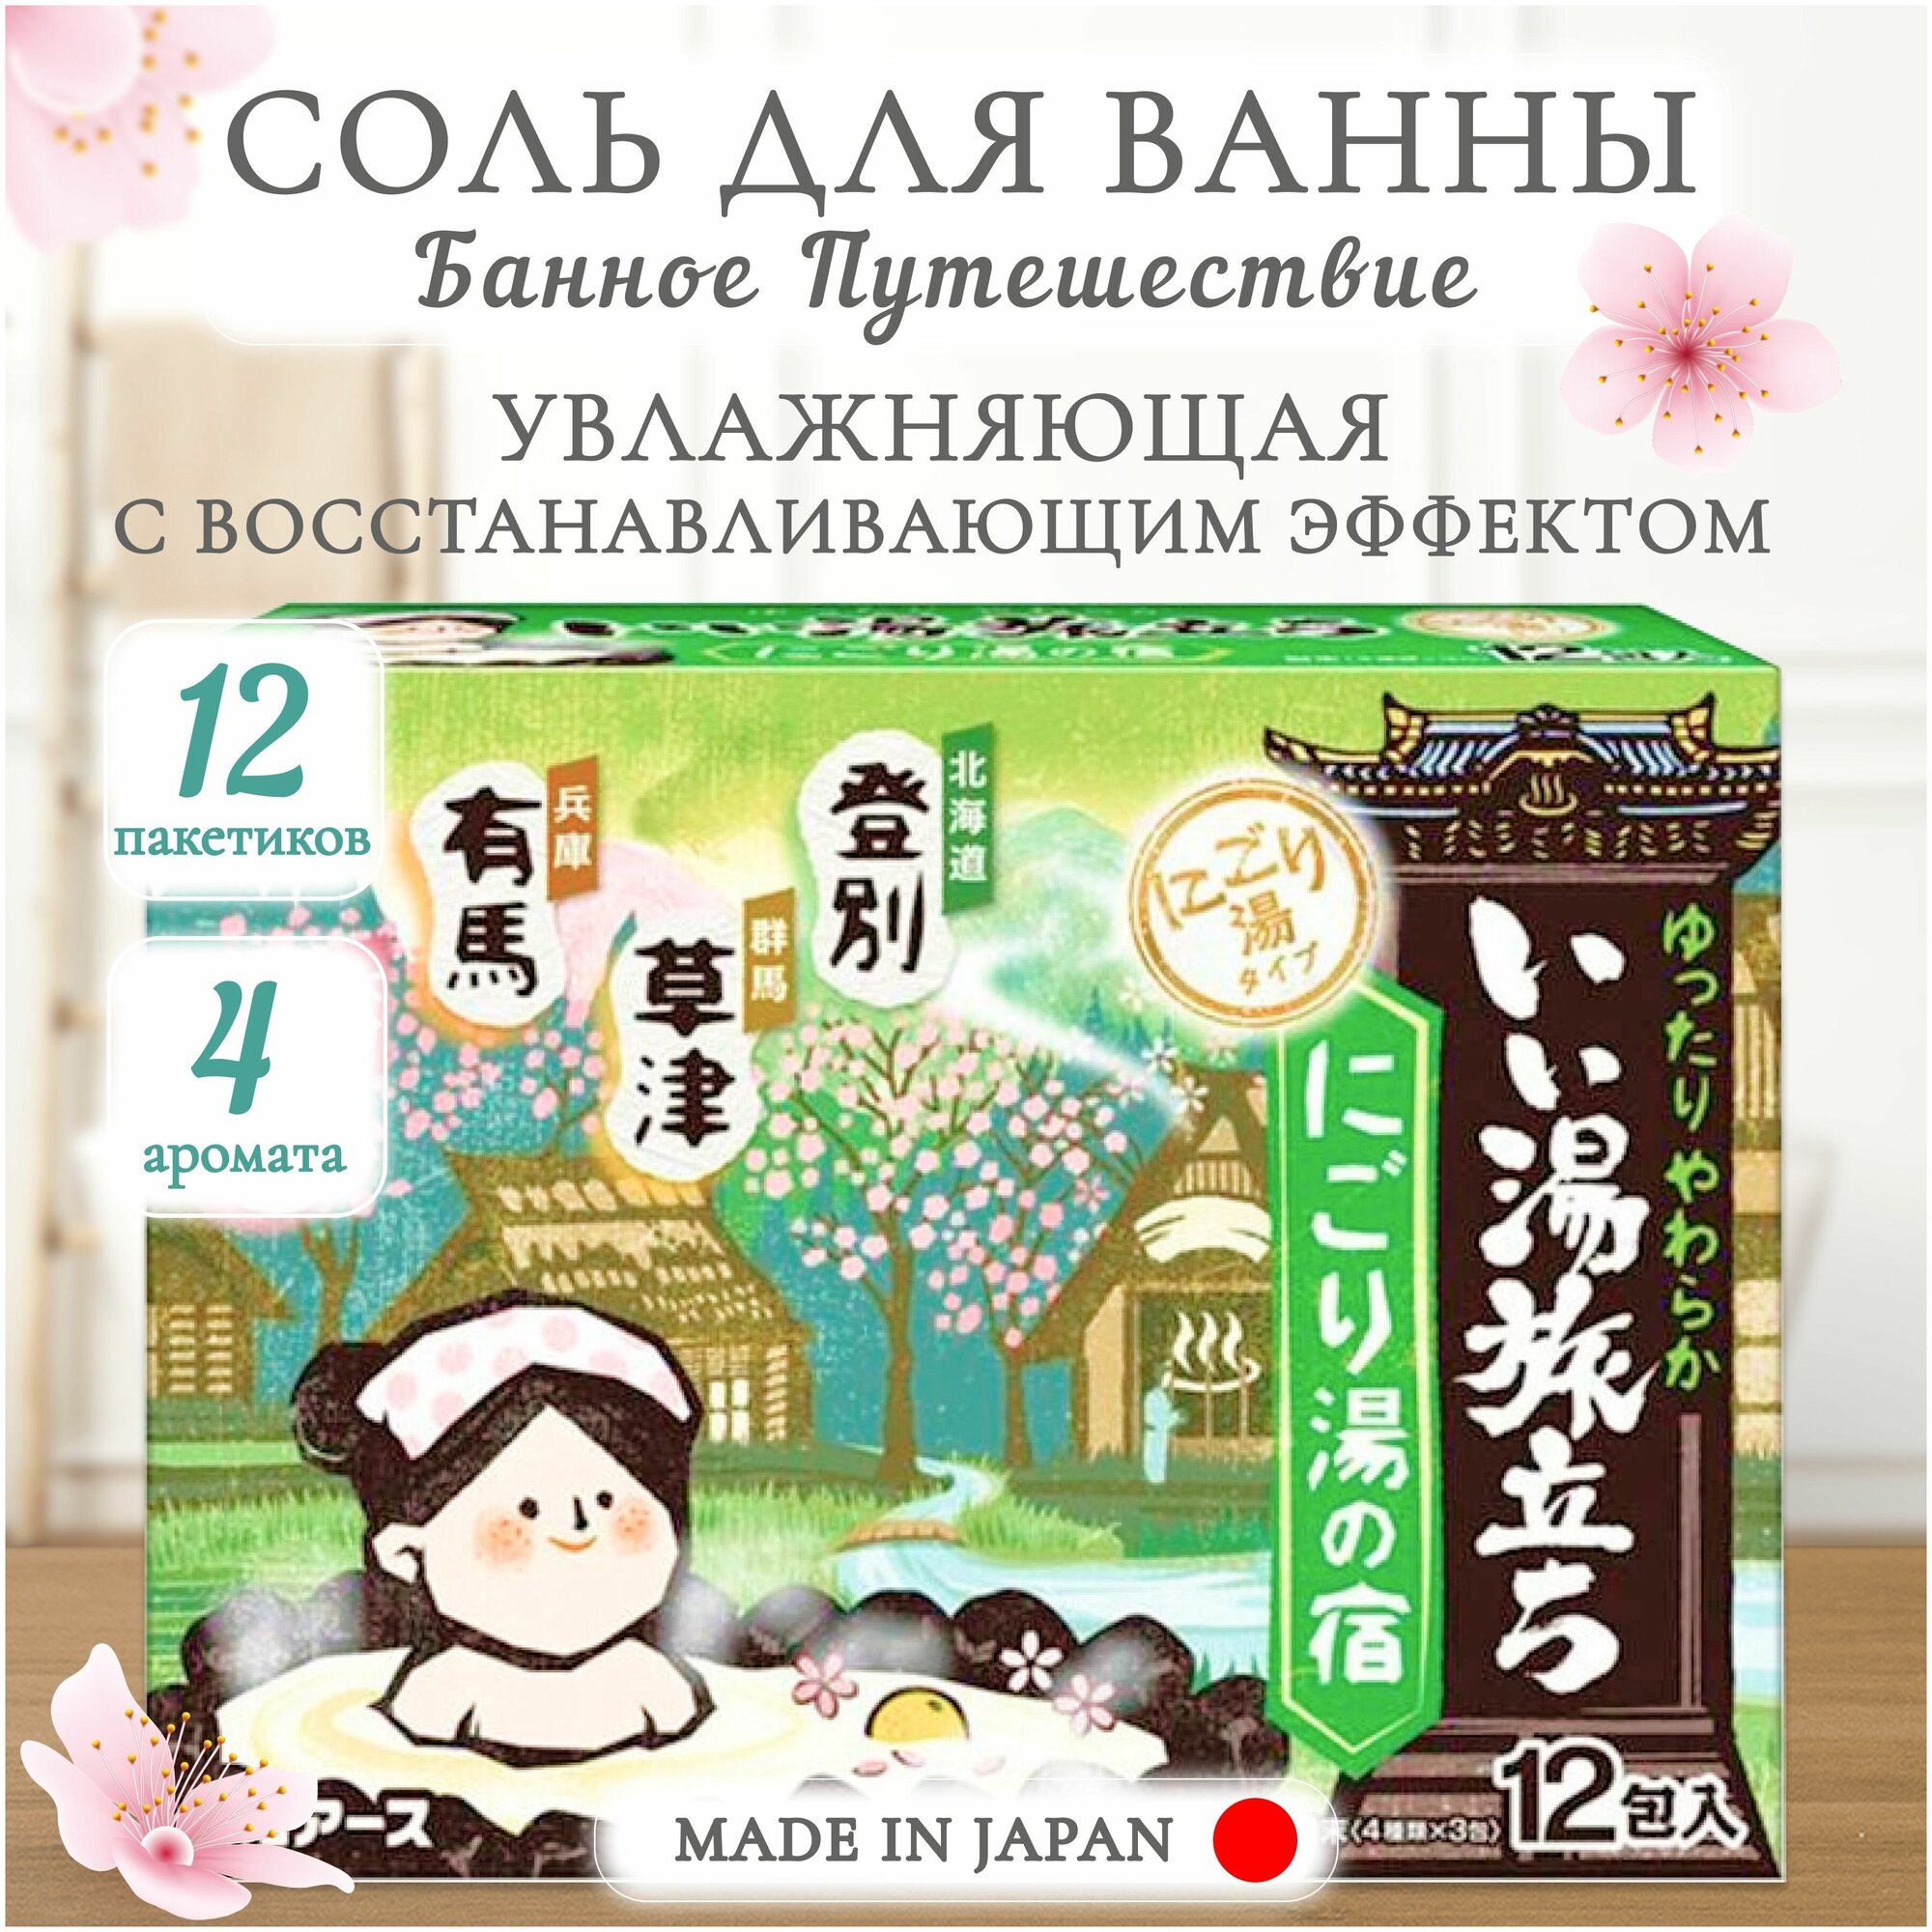 Увлажняющая соль для ванны "Банное путешествие" Hakugen Earth с восстанавливающим эффектом, с экстрактами мандарина и коикса, с ароматами кипариса, юдзу, айвы, сакуры, 12 пакетиков